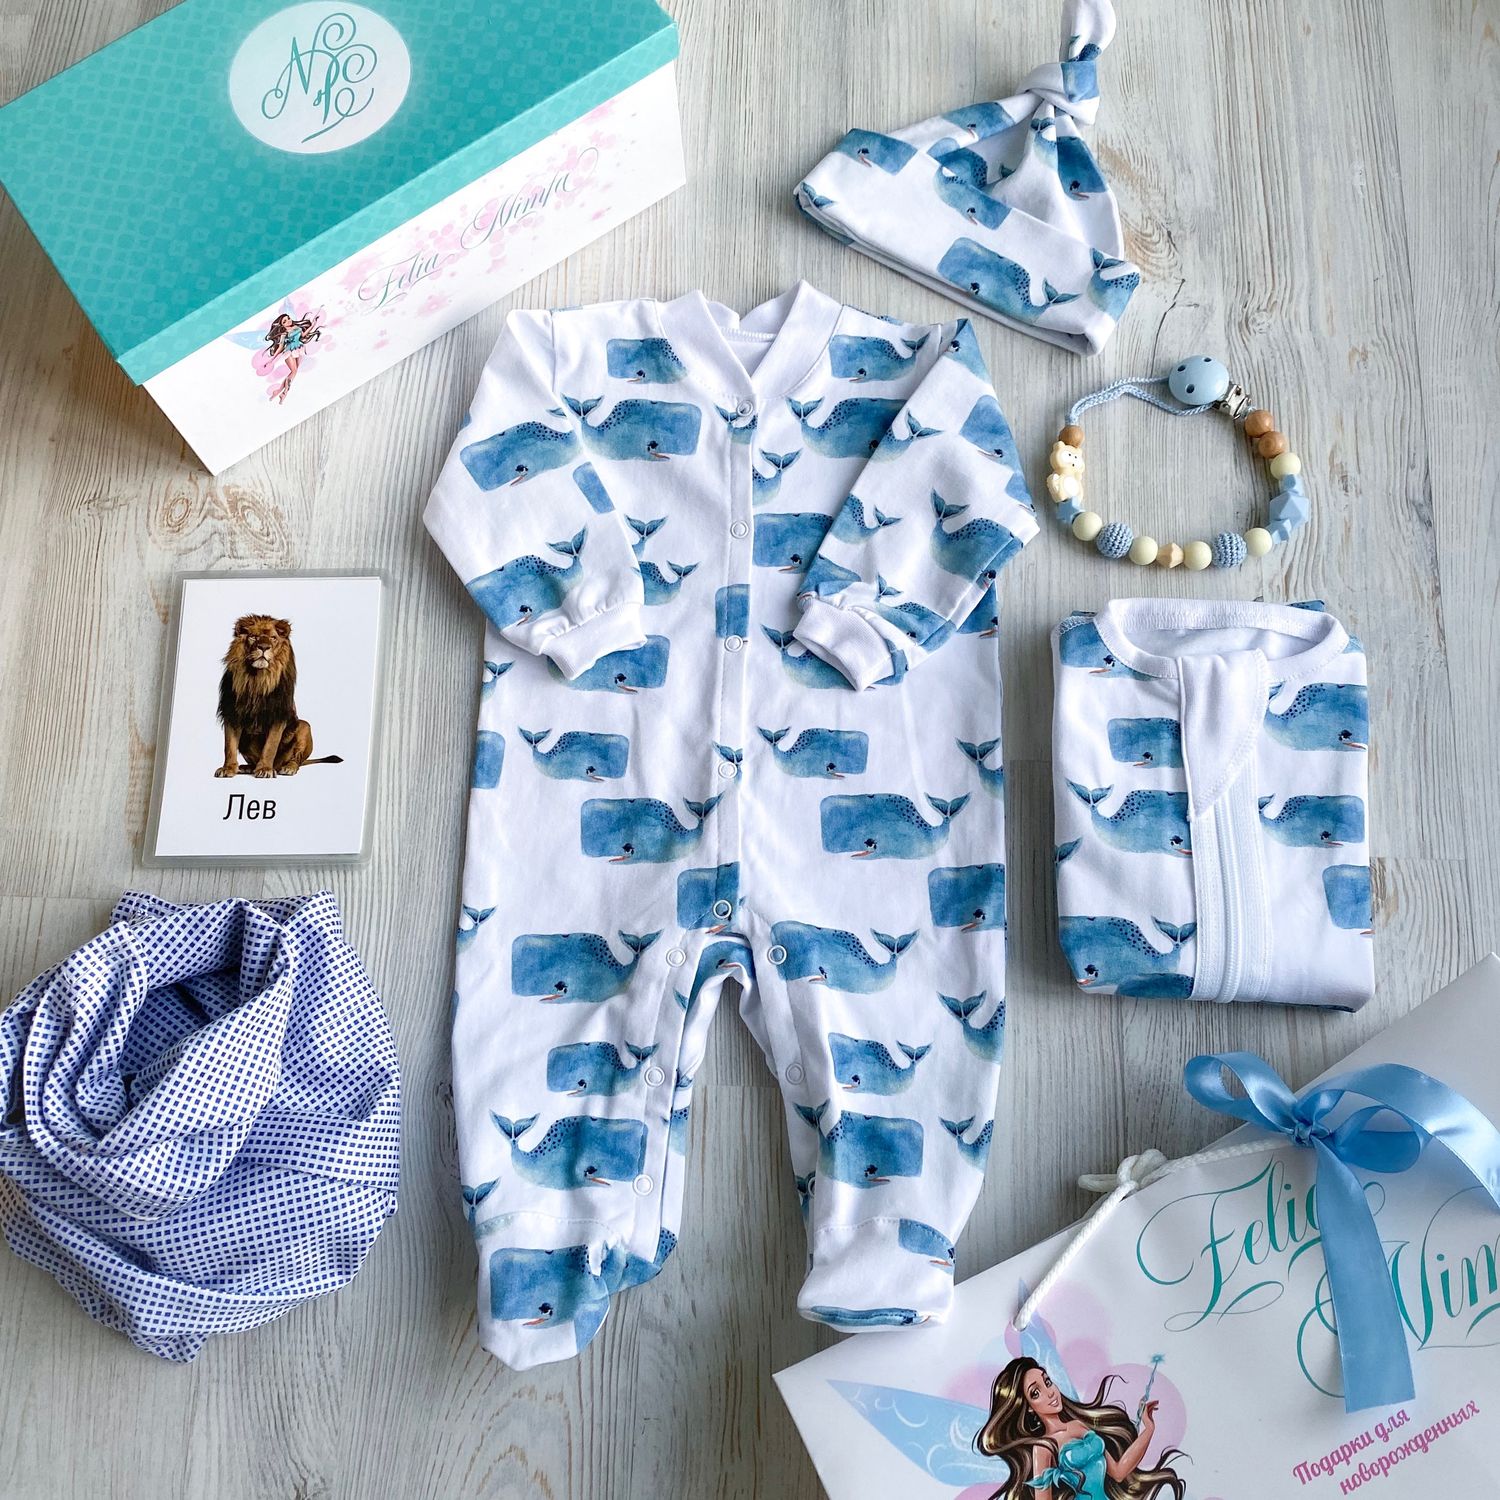 Подарочный комплект для новорожденного. Подарочные наборы для новорожденных мальчиков. Подарочный набор одежды для новорожденного. Подарочные наборы для новорожденных мальчиков своими руками.